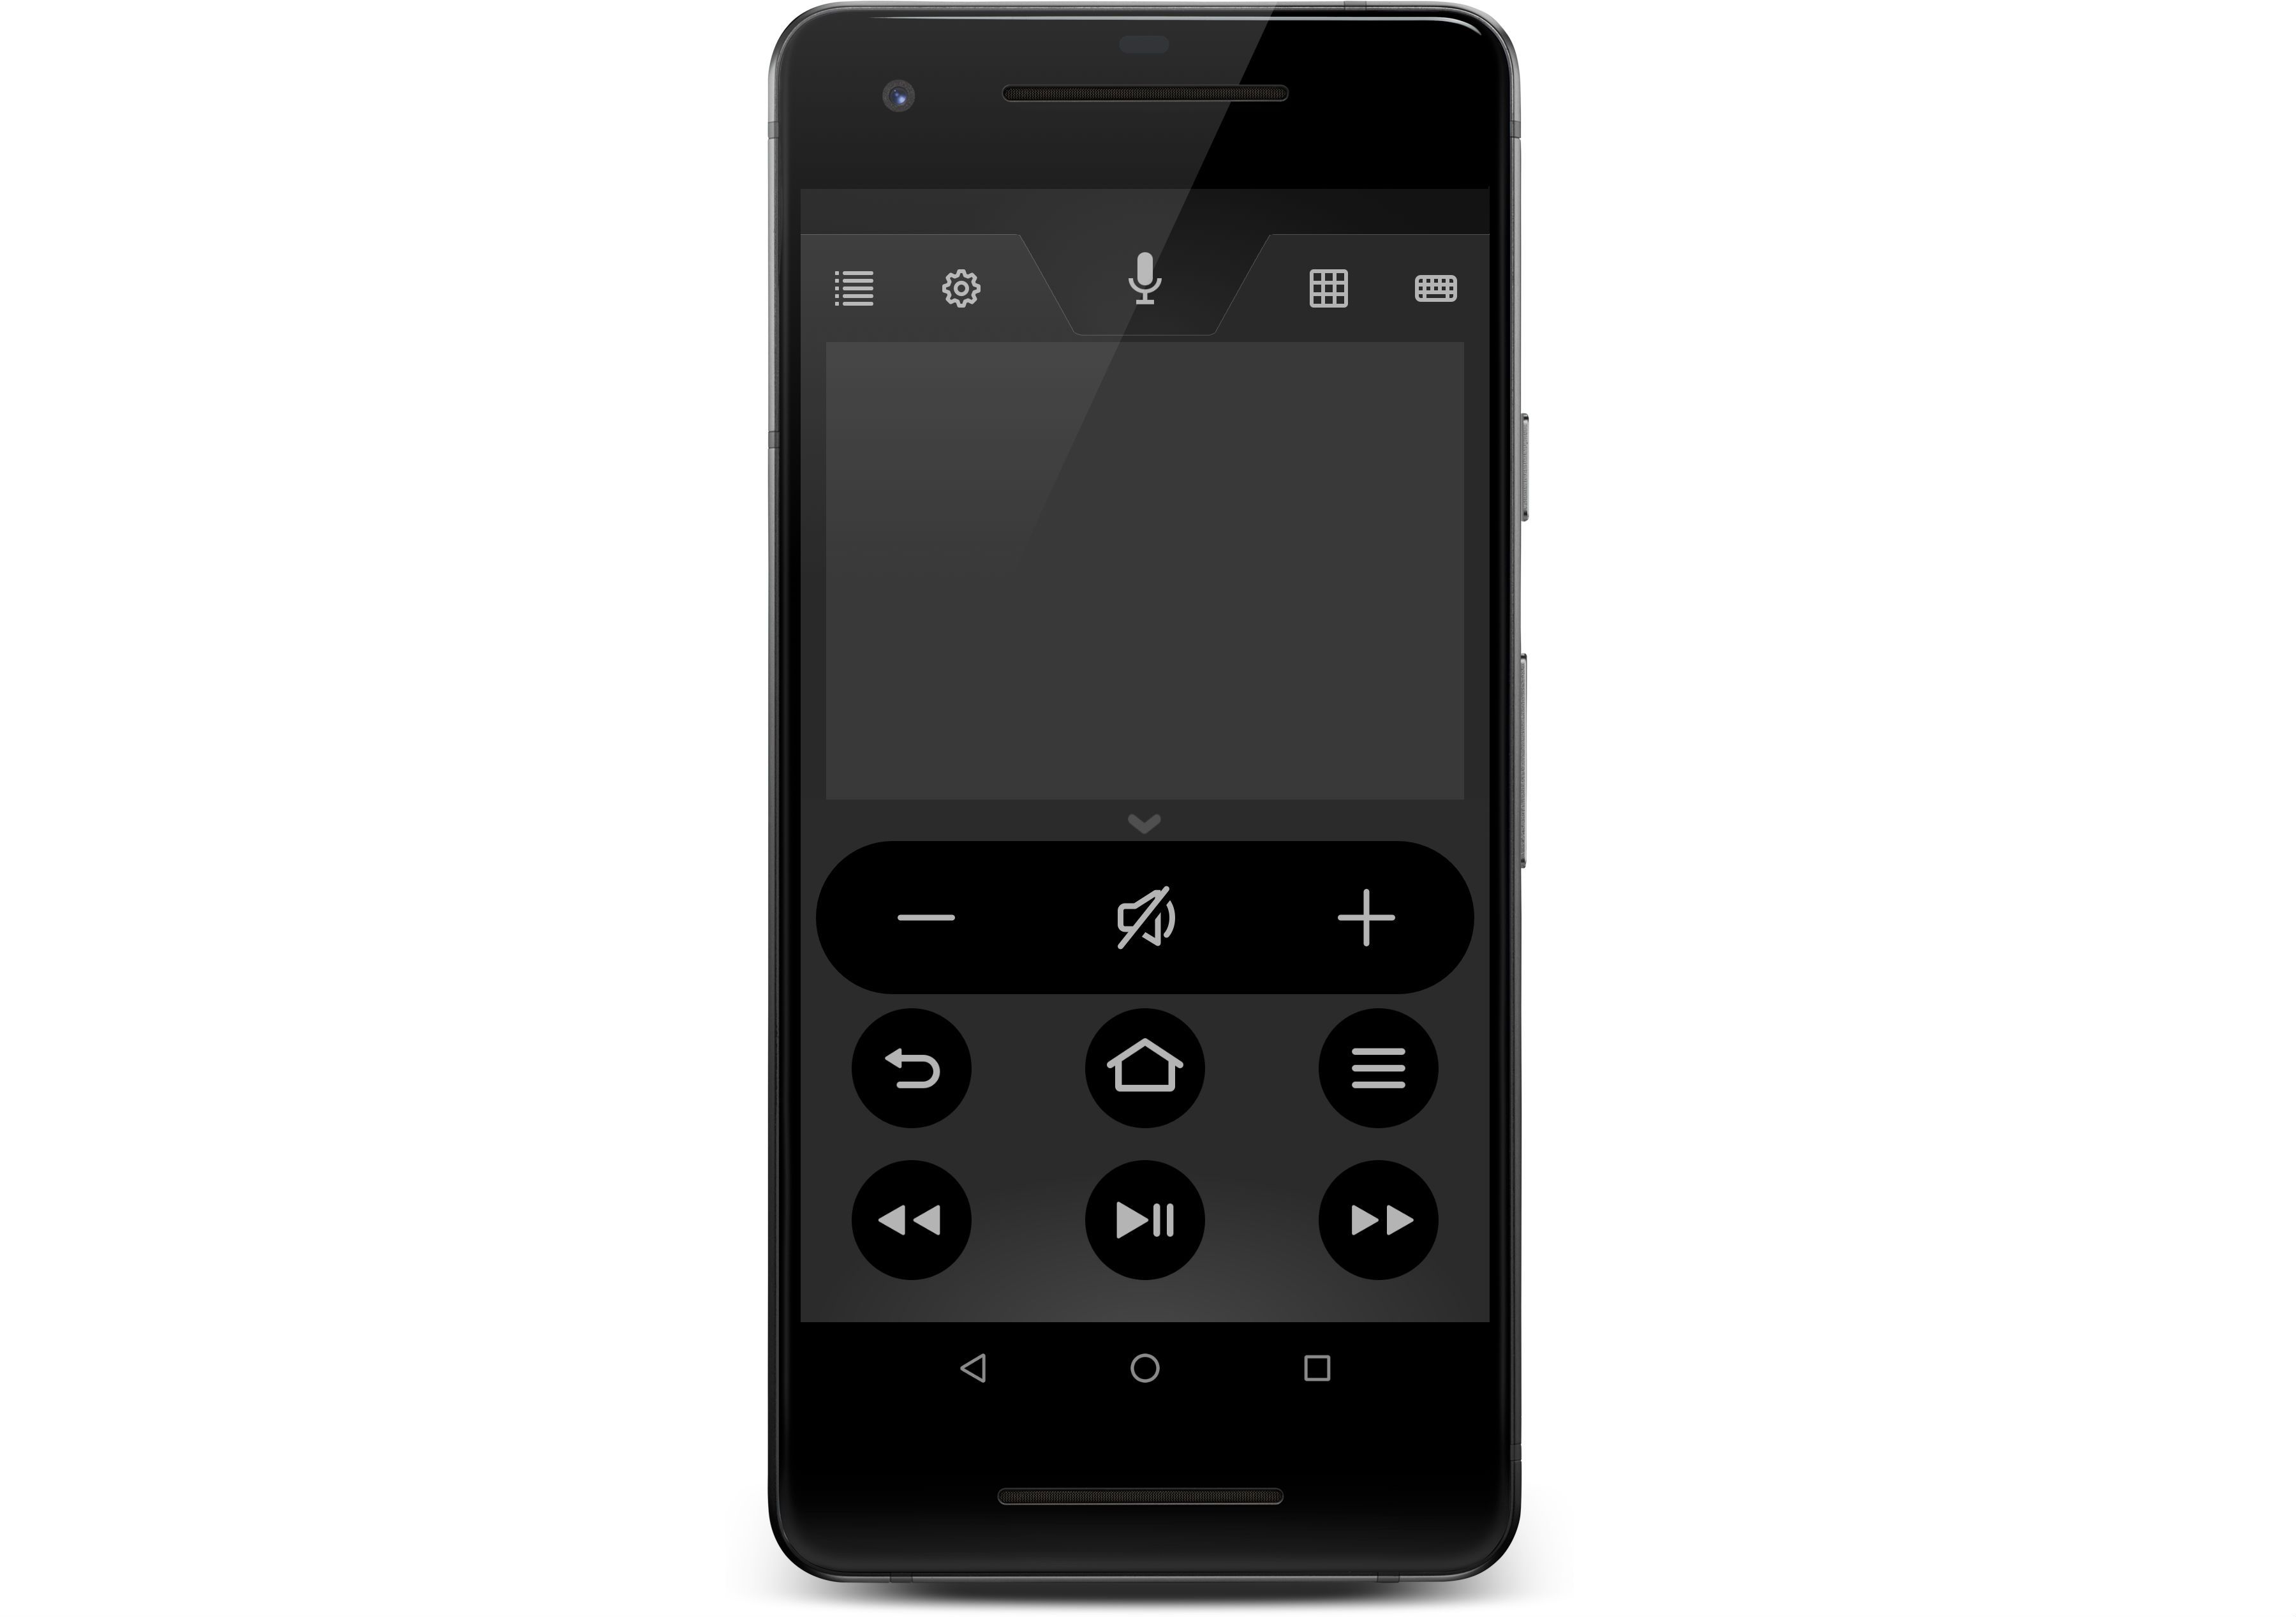 Vzdálená aplikace Fire TV spuštěná na telefonu Android.